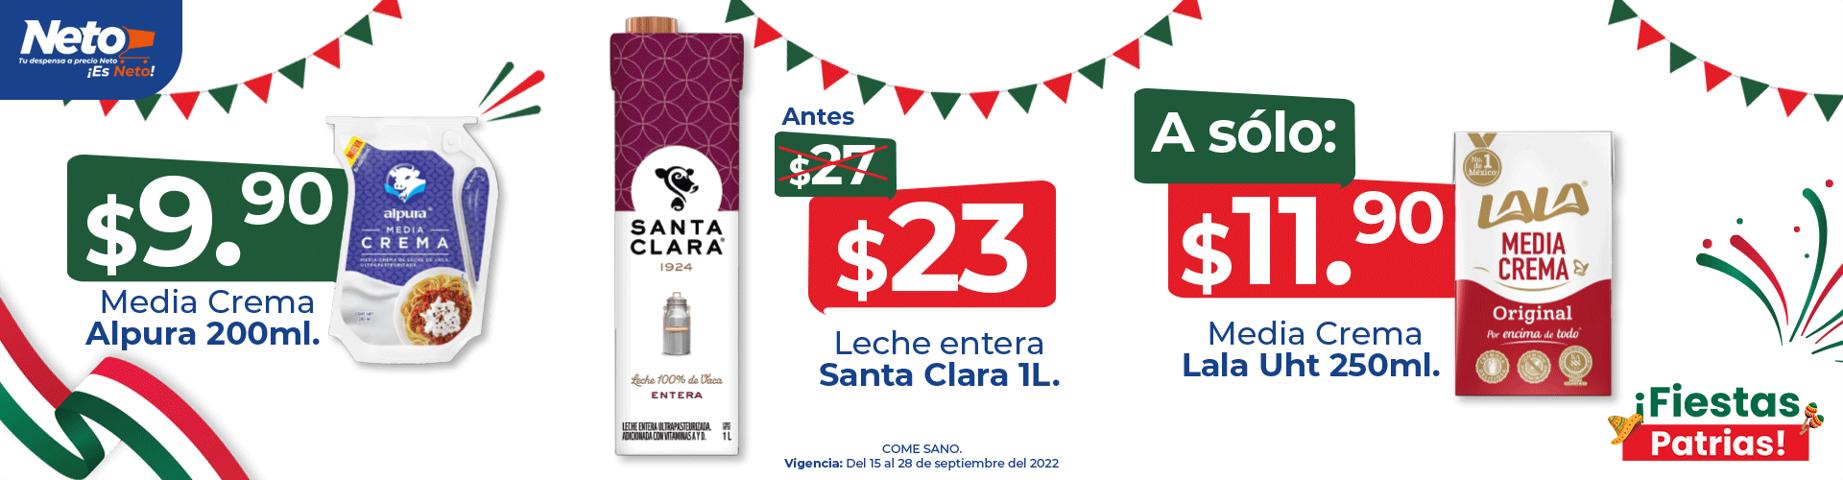 Ofertas de Hiper-Supermercados en San Miguel de Allende | Ofertas Tiendas Neto de Tiendas Neto | 15/9/2022 - 28/9/2022